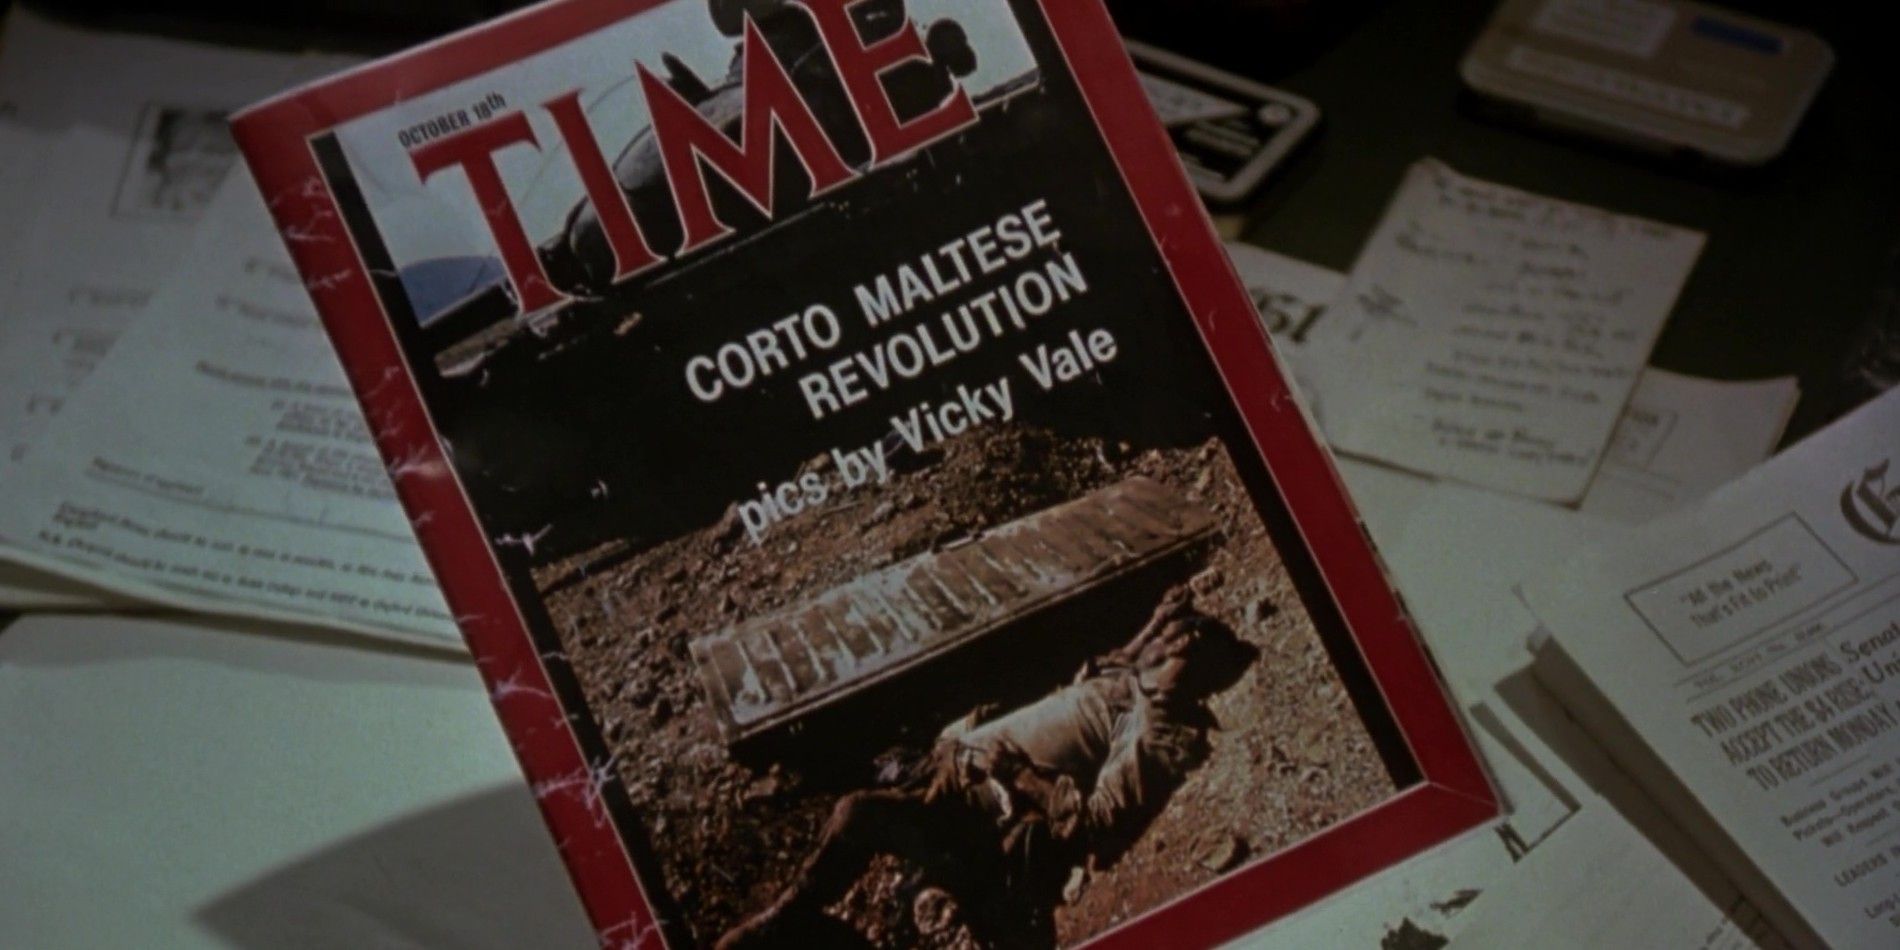 Corto Maltese Connection in Batman 1989